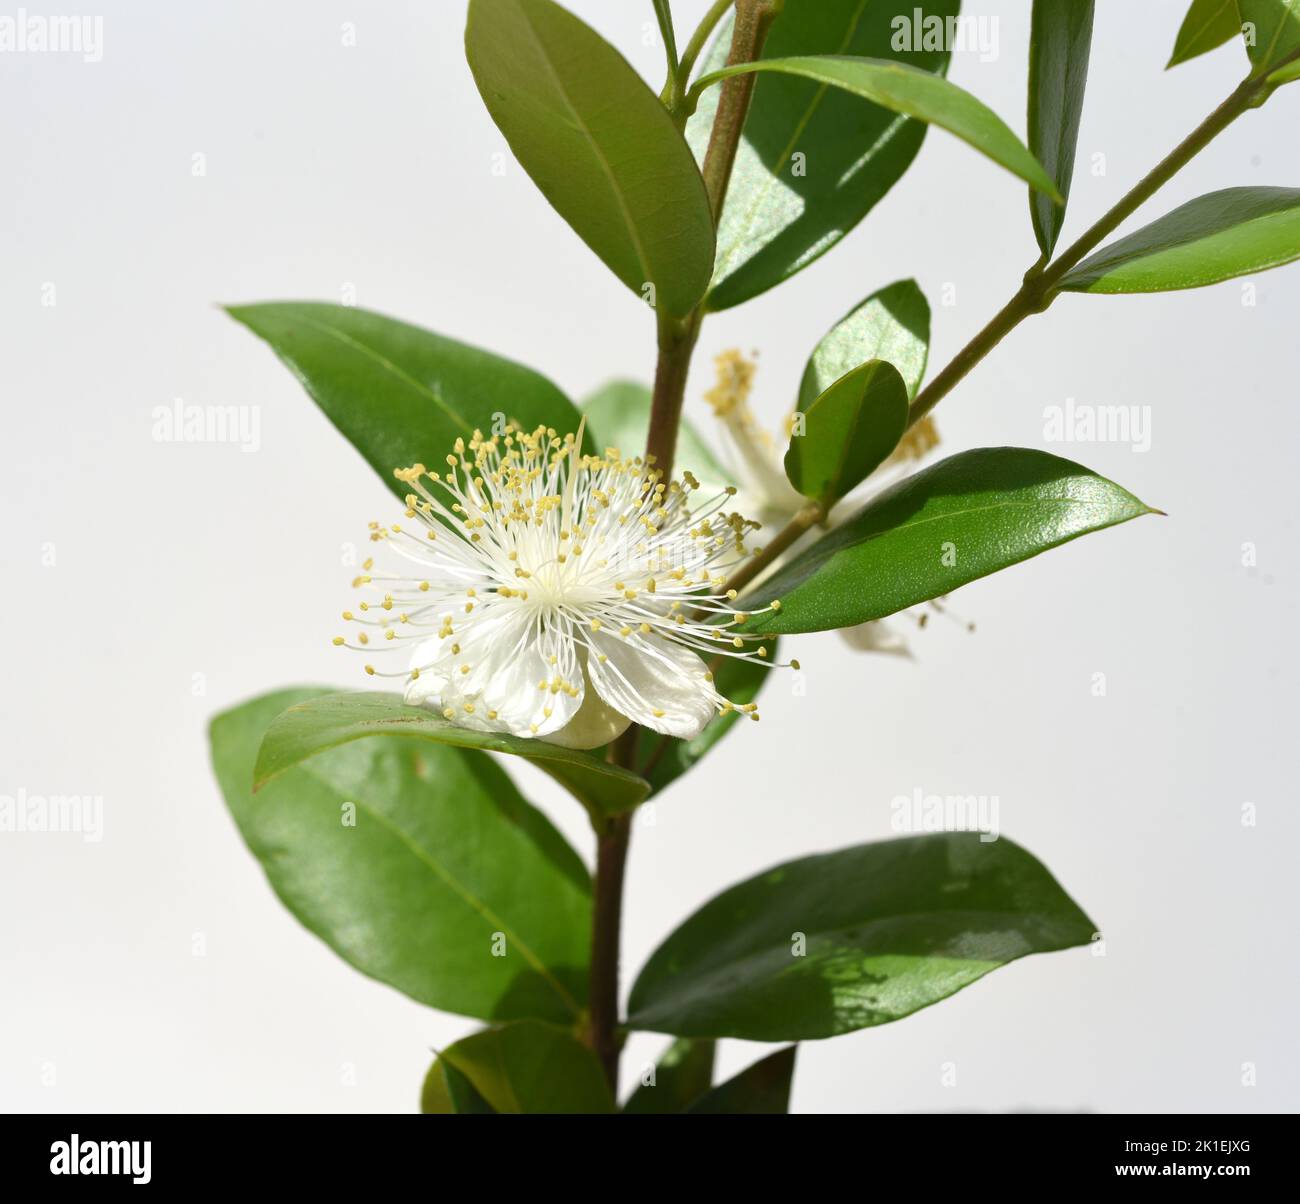 Myrtle, Myrtus communis, chiamato anche balsamo è un arbusto con bellissimi fiori bianchi. Si tratta di una pianta medicinale importante e di una pianta da giardino attraente. Foto Stock